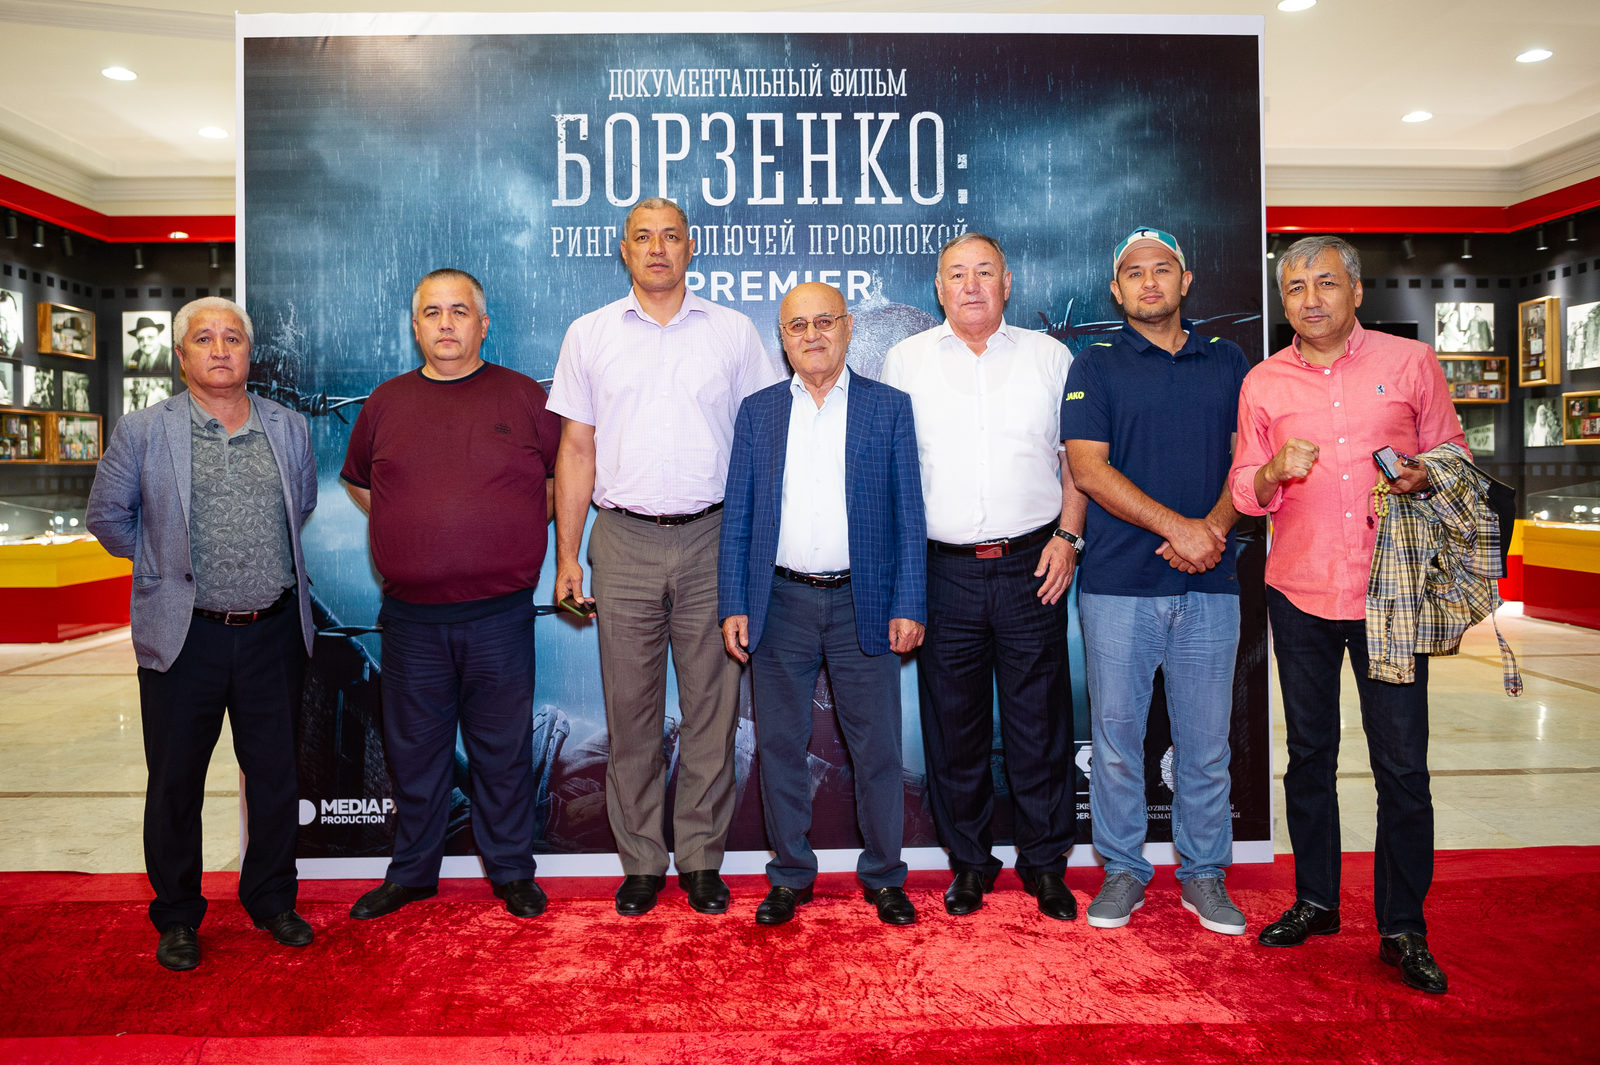 Боксёр в Бухенвальде: Ташкентская премьера фильма об Андрее Борзенко